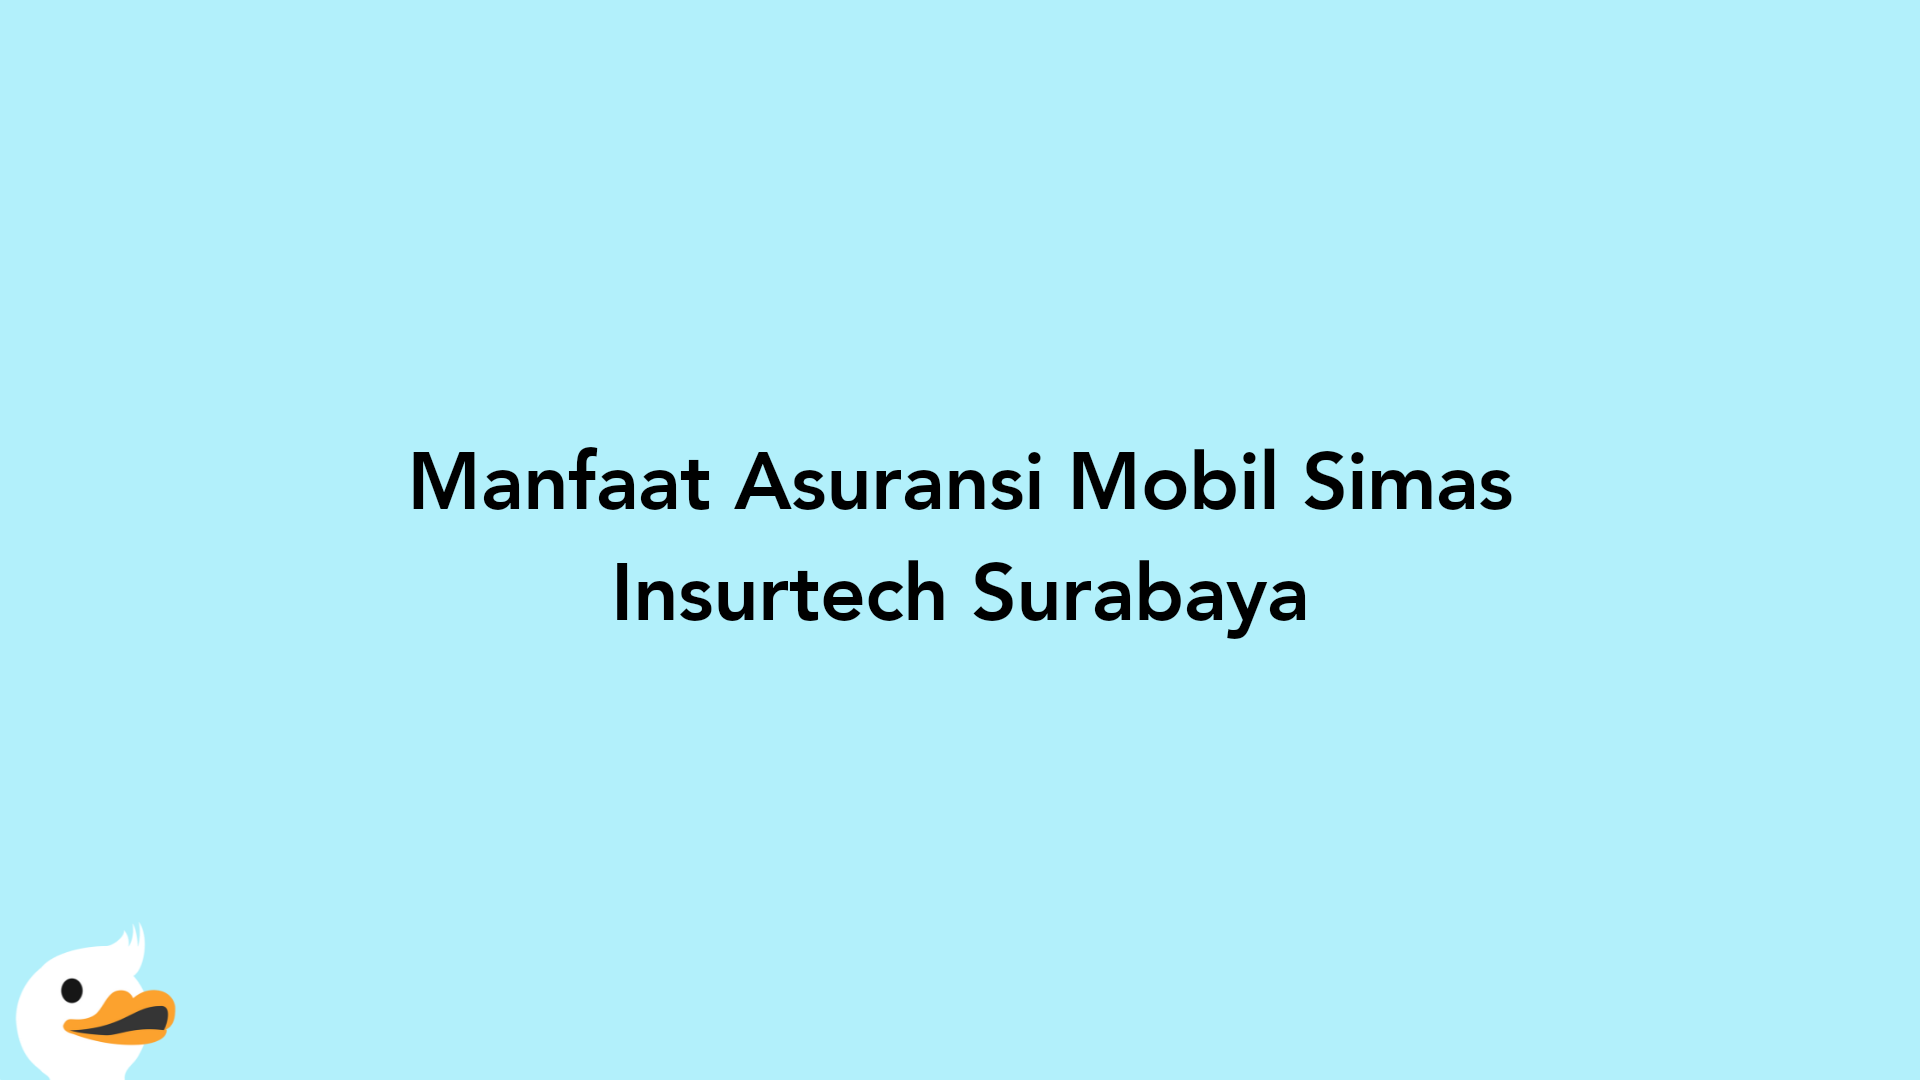 Manfaat Asuransi Mobil Simas Insurtech Surabaya